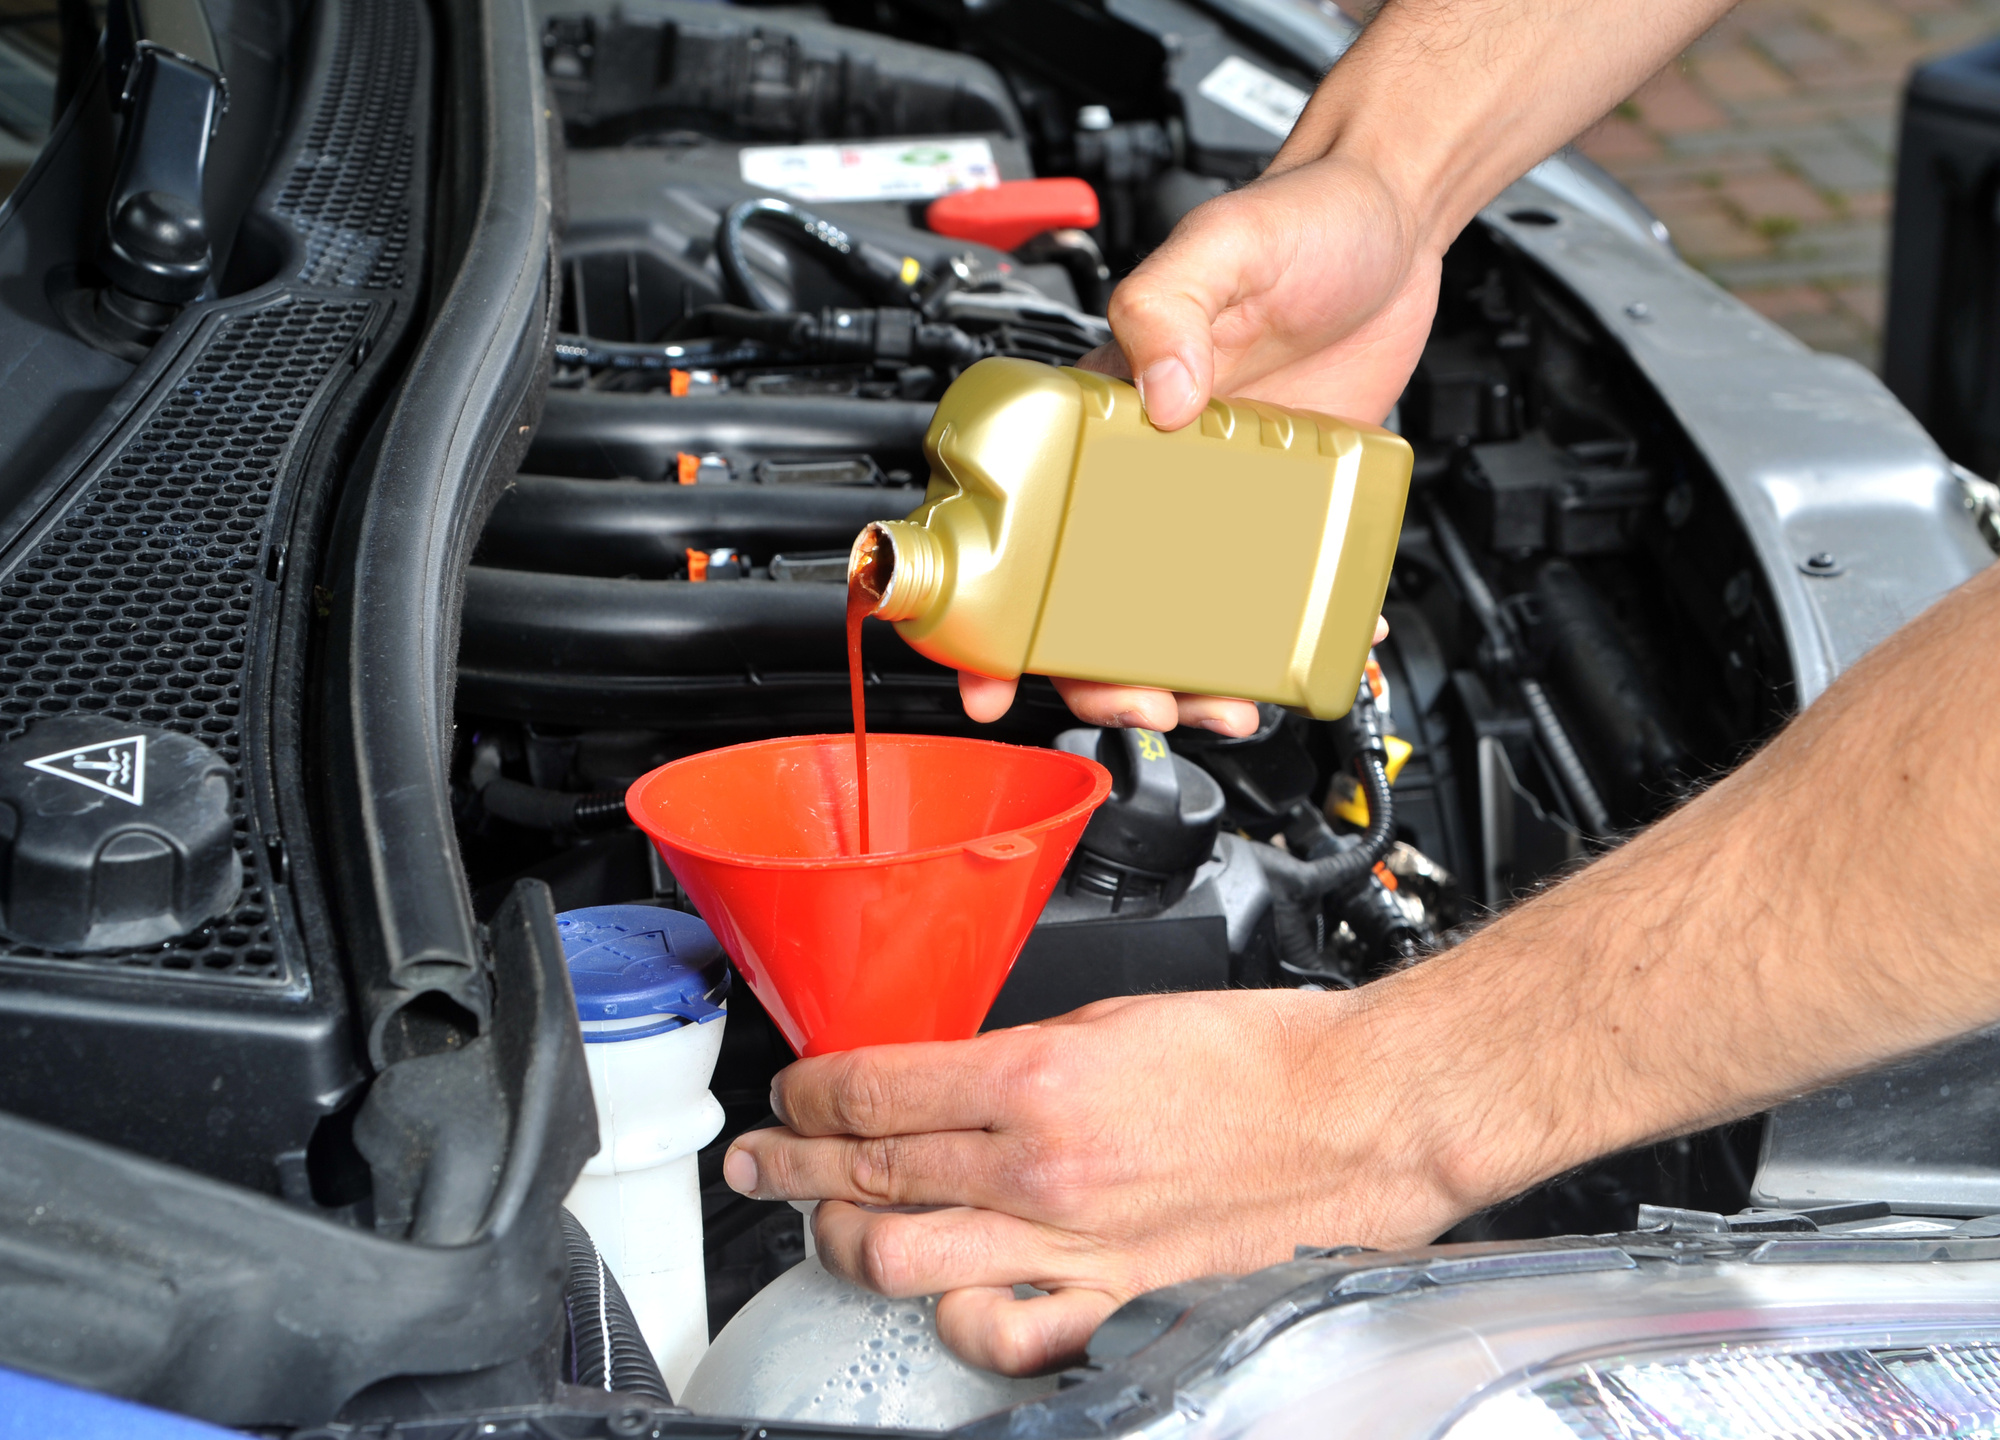 Diy Auto Repair Basic Car Repairs Everyone Should Know - Car Repairs